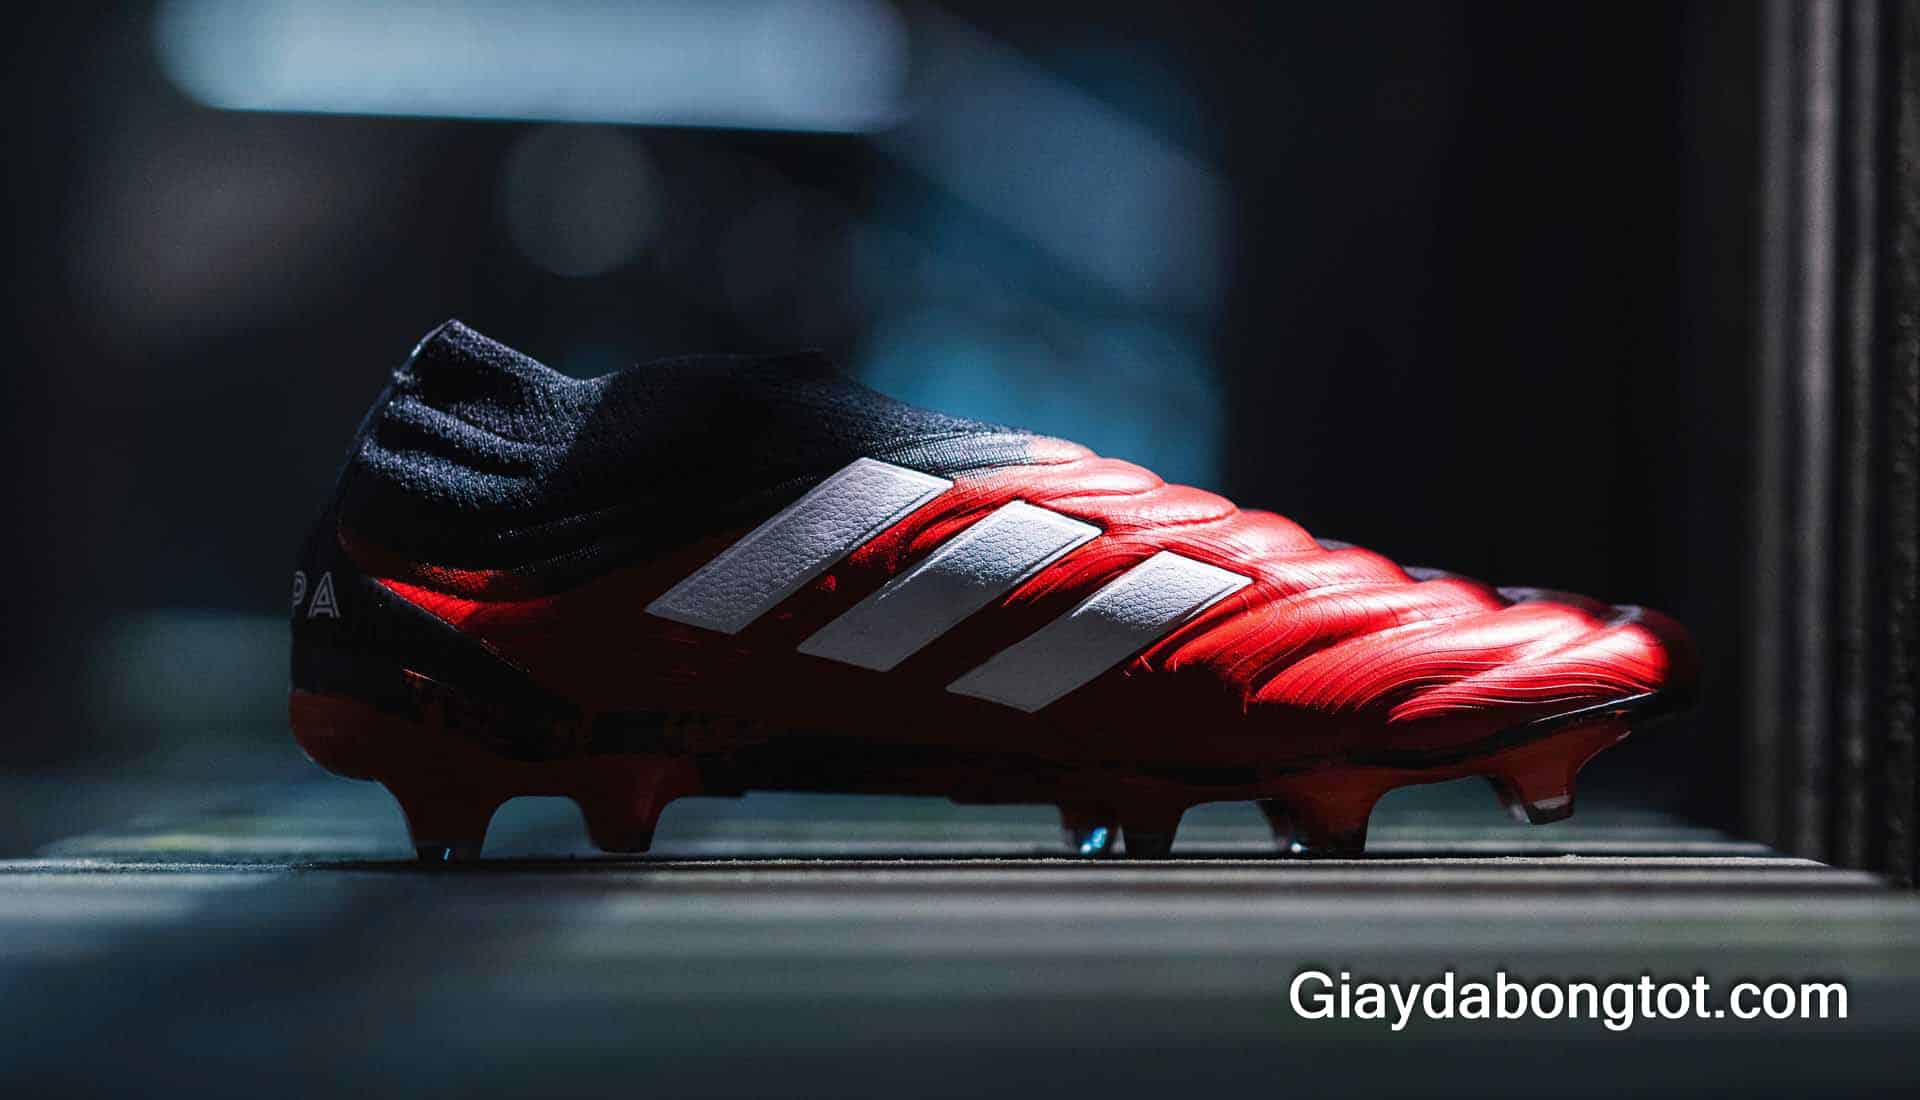 Giày Adidas Copa 19+ với các vân nổi và thiết kế không dây hỗ trợ kiểm soát bóng